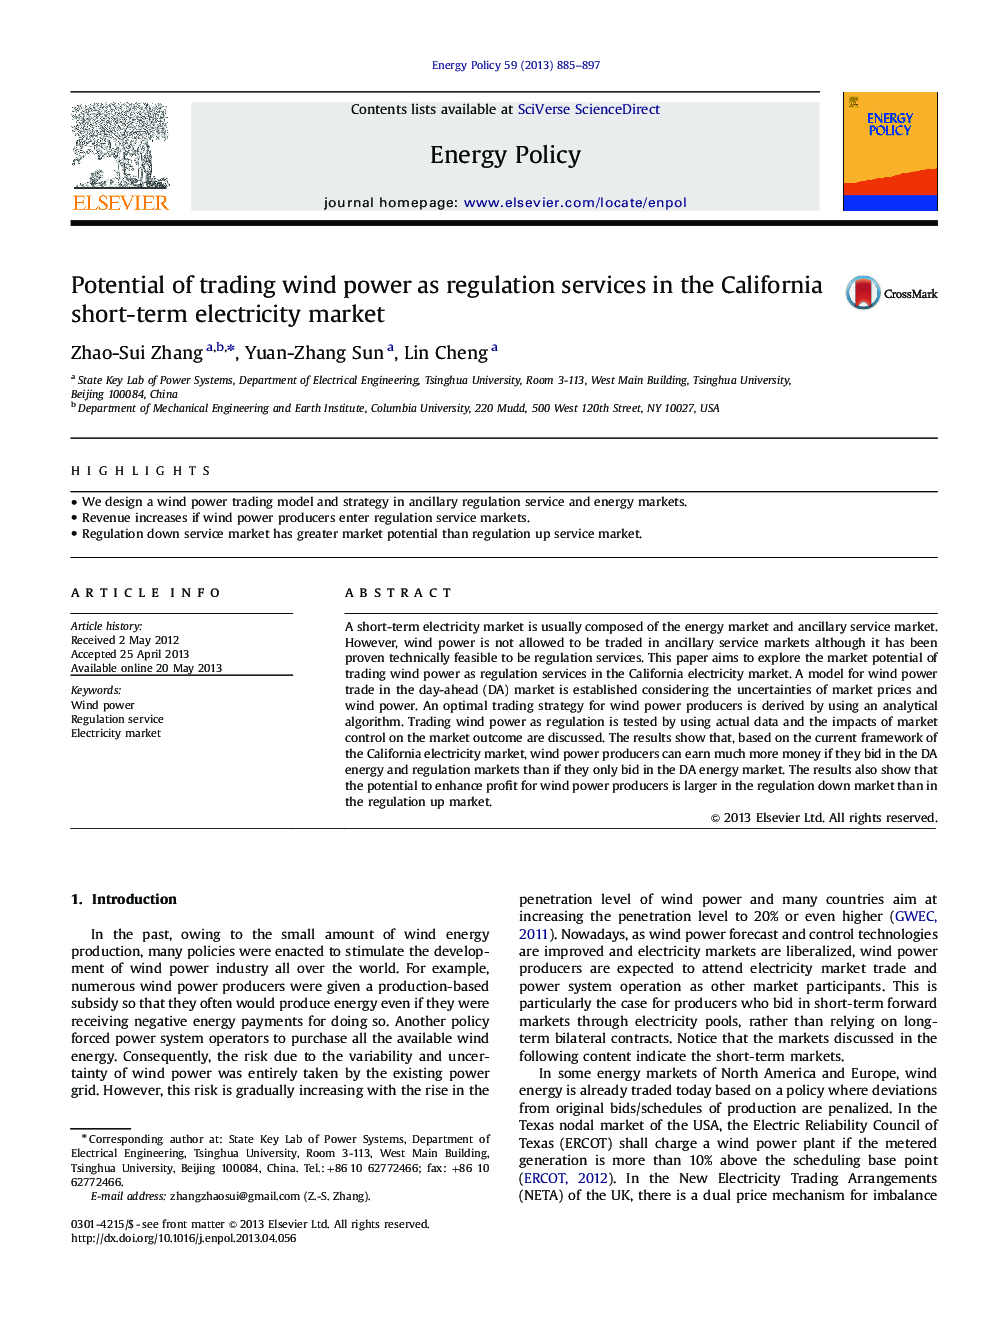 پتانسیل تجارت انرژی باد به عنوان خدمات تنظیم در بازار برق کوتاه مدت در کالیفرنیا 